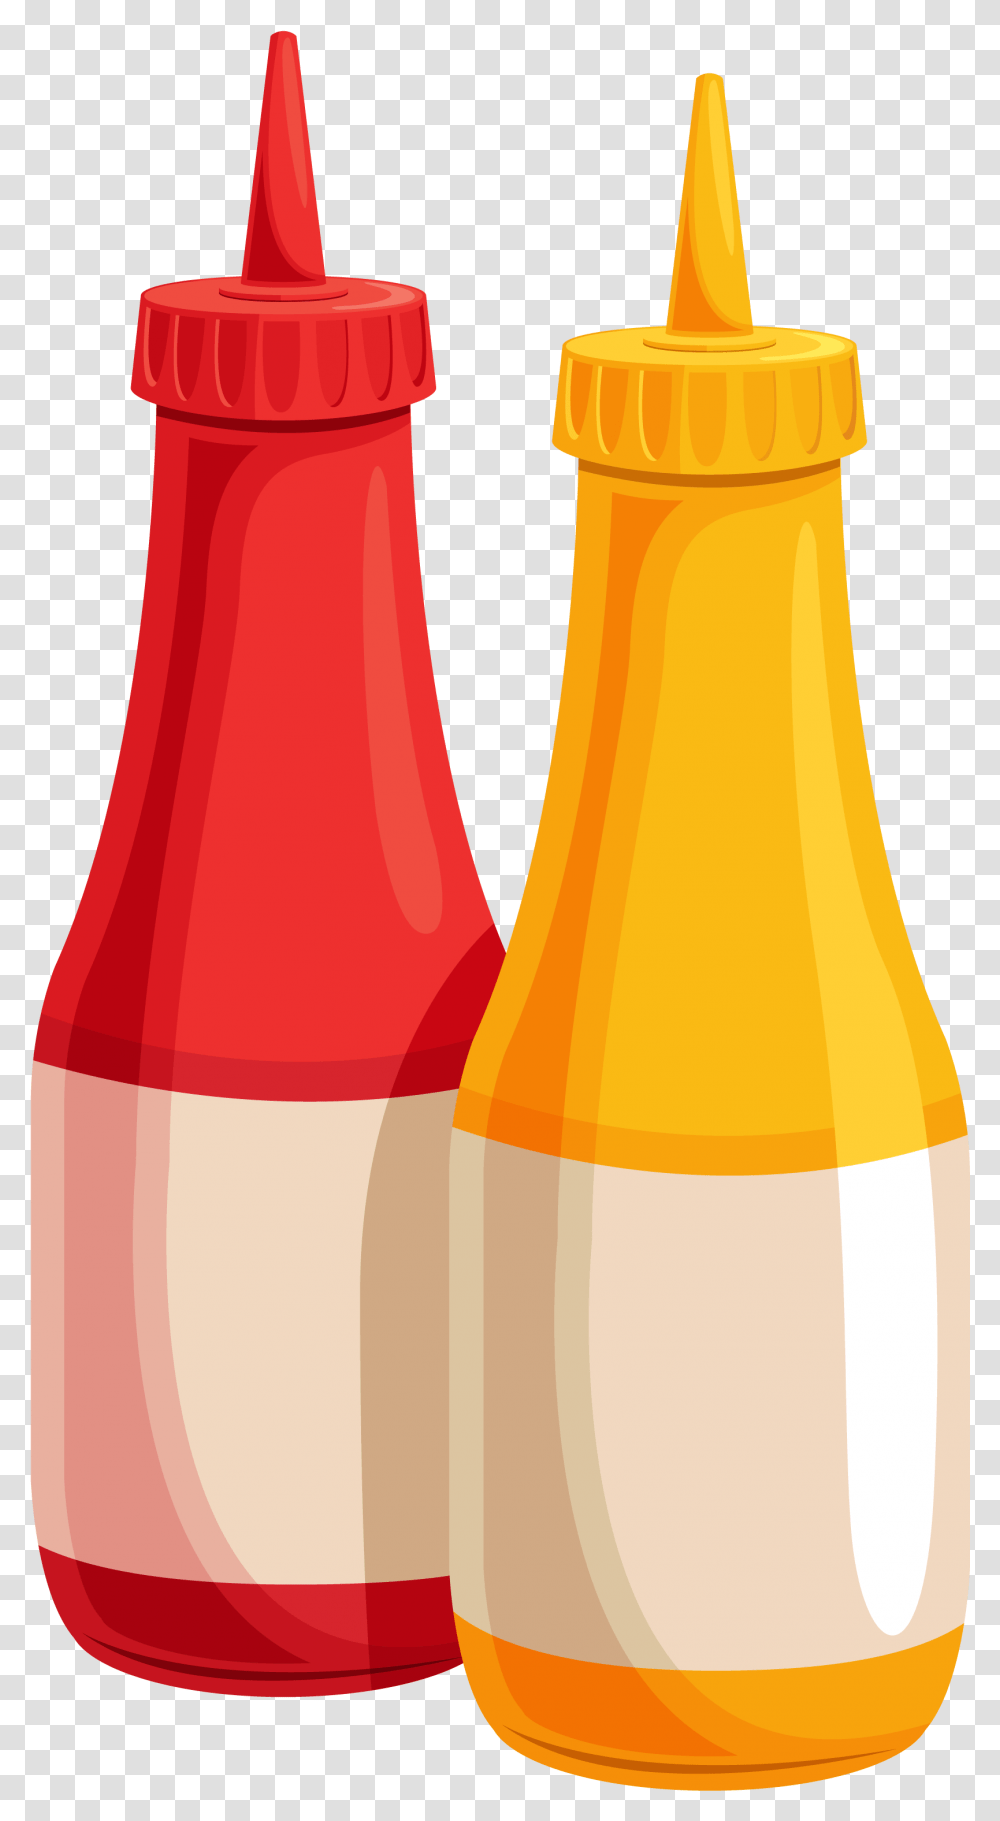 Ketchup Bottle Clip Art Ketchup And Mustard Clipart, Pop Bottle, Beverage, Drink, Juice Transparent Png